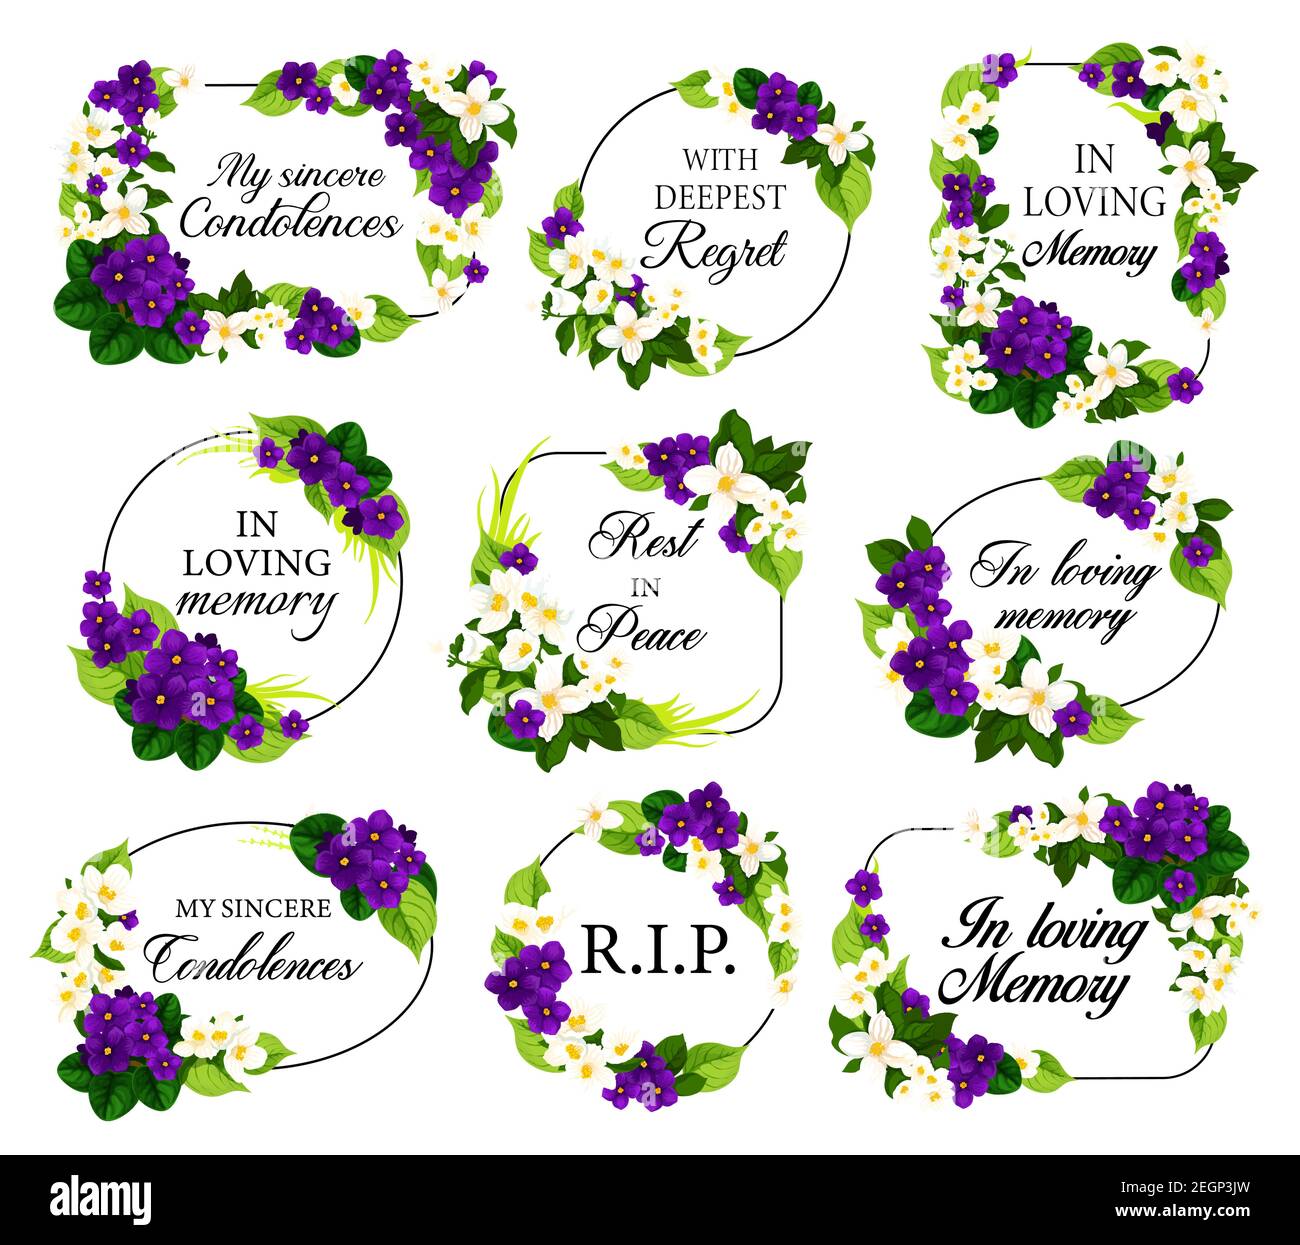 Cadres funéraires avec fleurs blanches et violettes en deuil, condoléances sincères, repos en paix, typographie des plus profonds regrets. Nécrologie bourrée Illustration de Vecteur